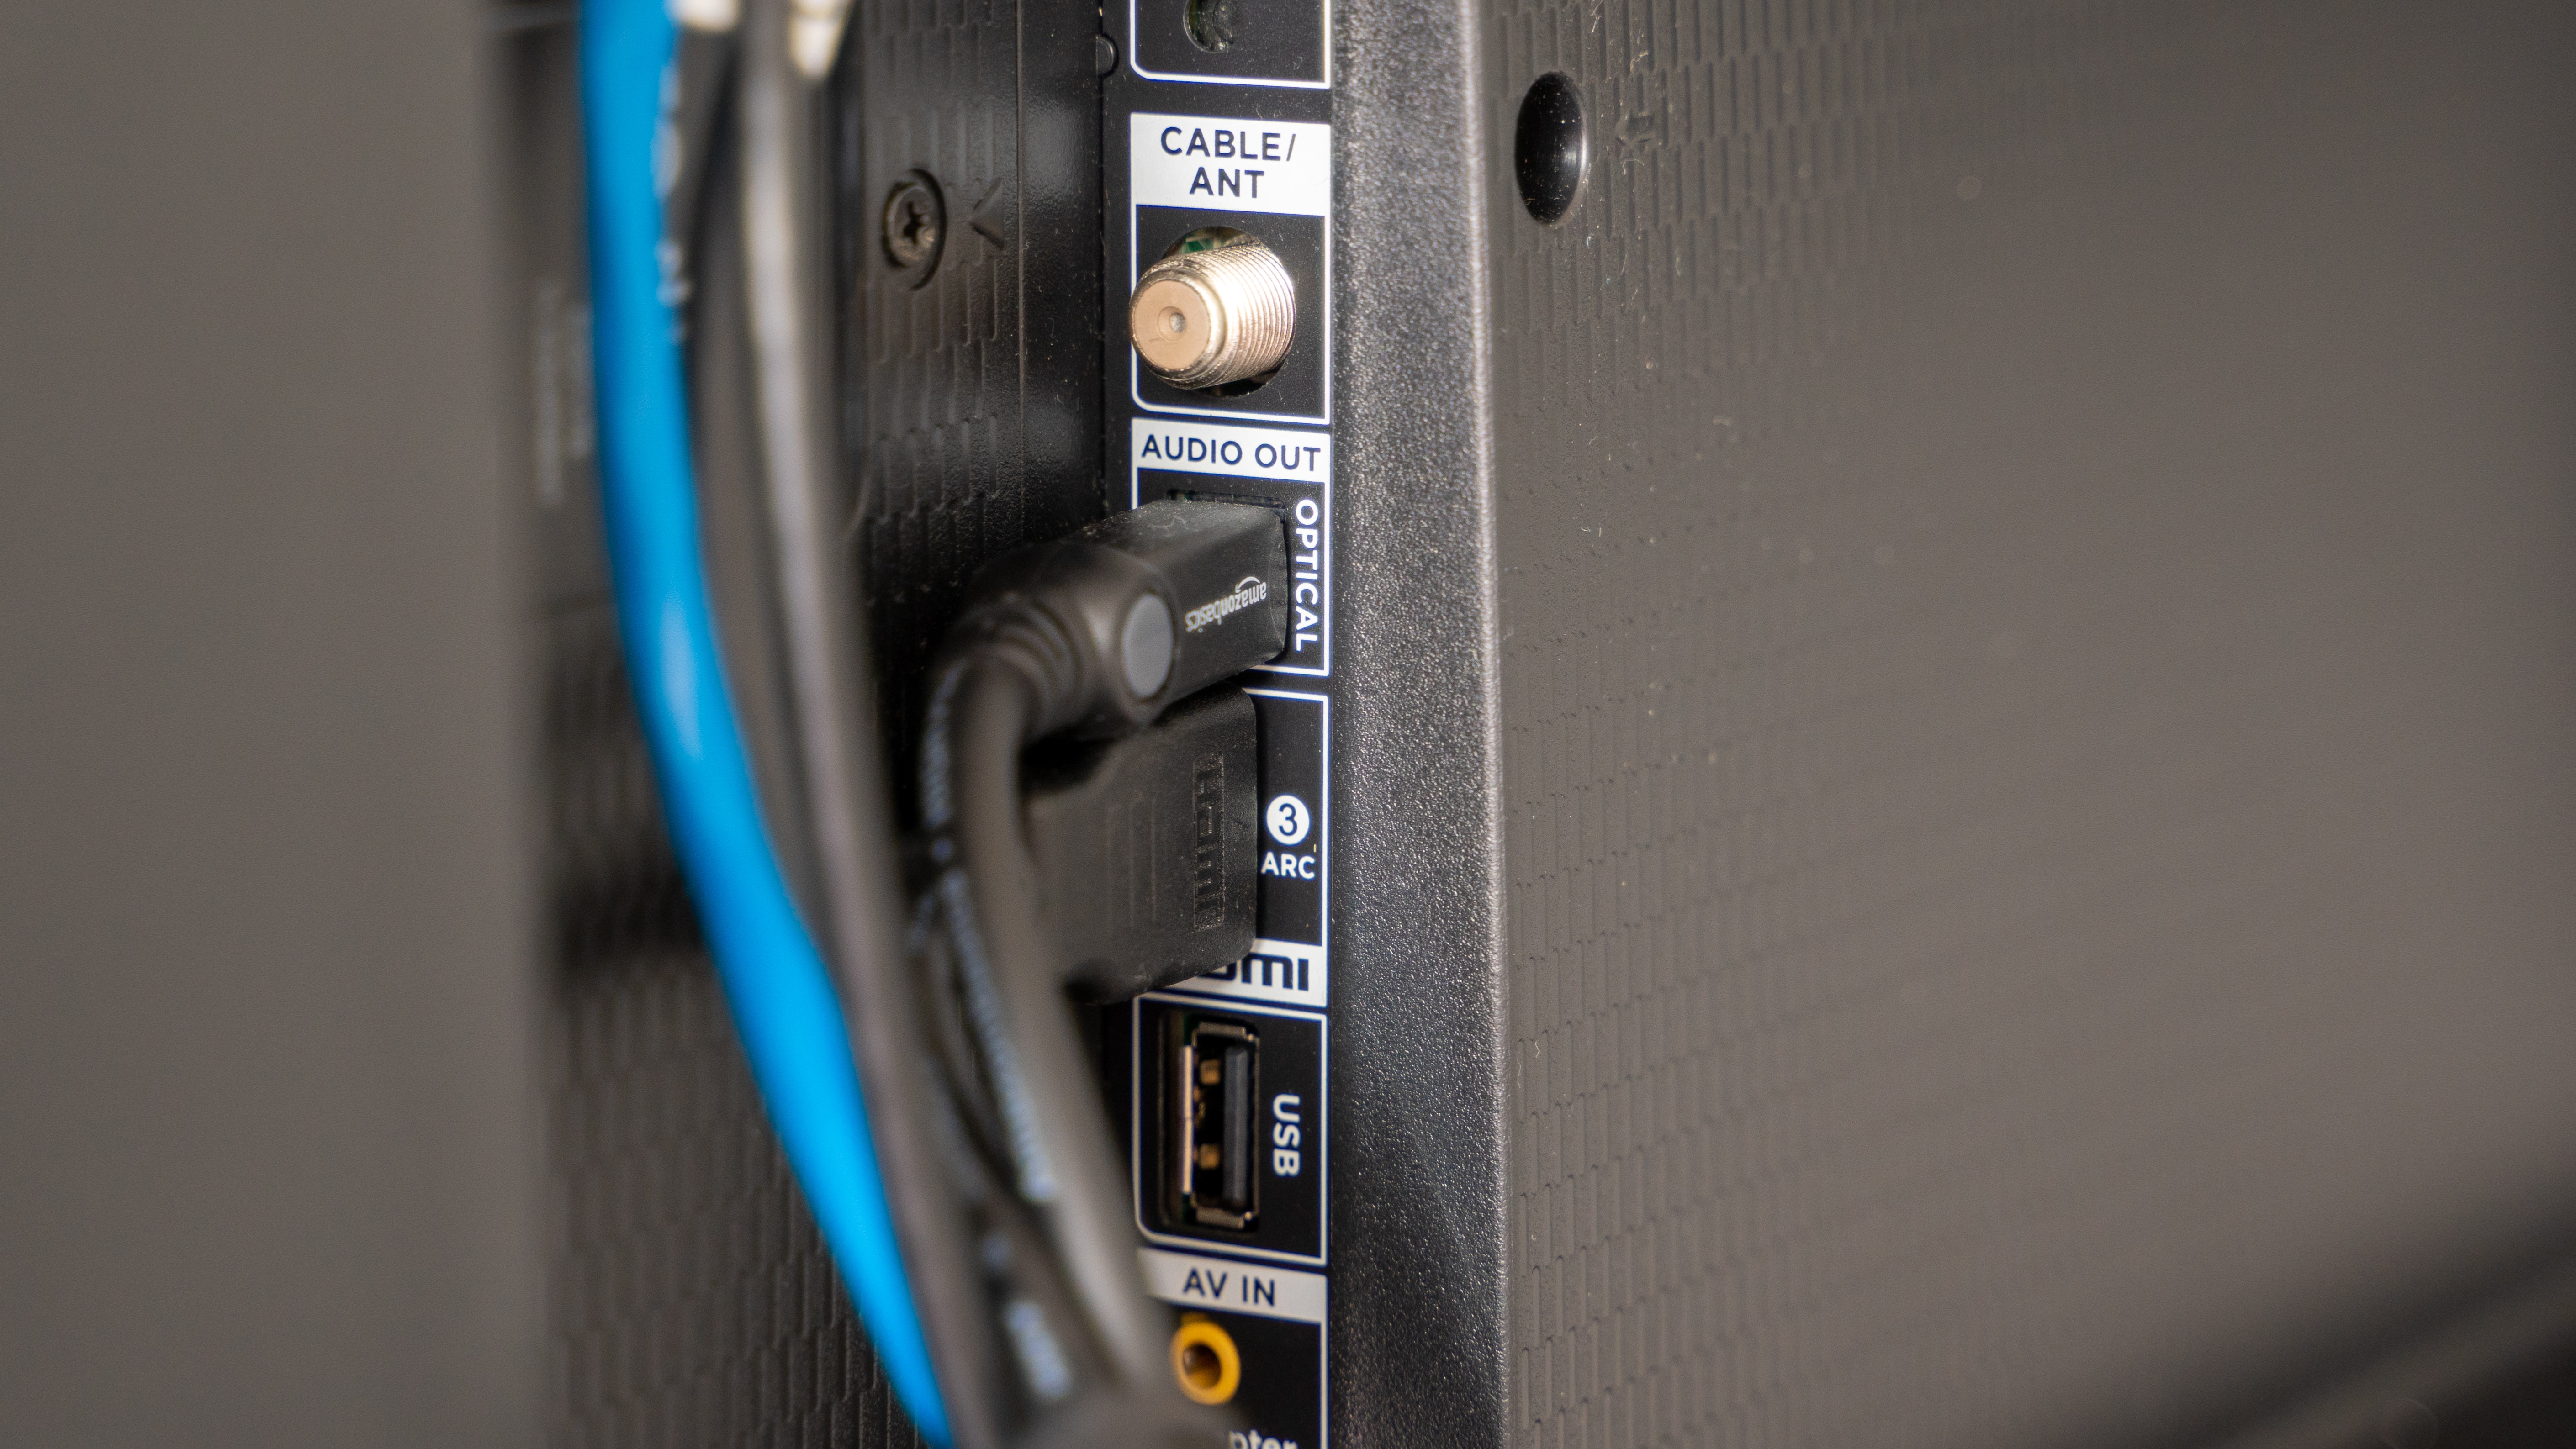 Smart TV: descubre los múltiples usos de los puertos USB de tu televisor, Actualidad